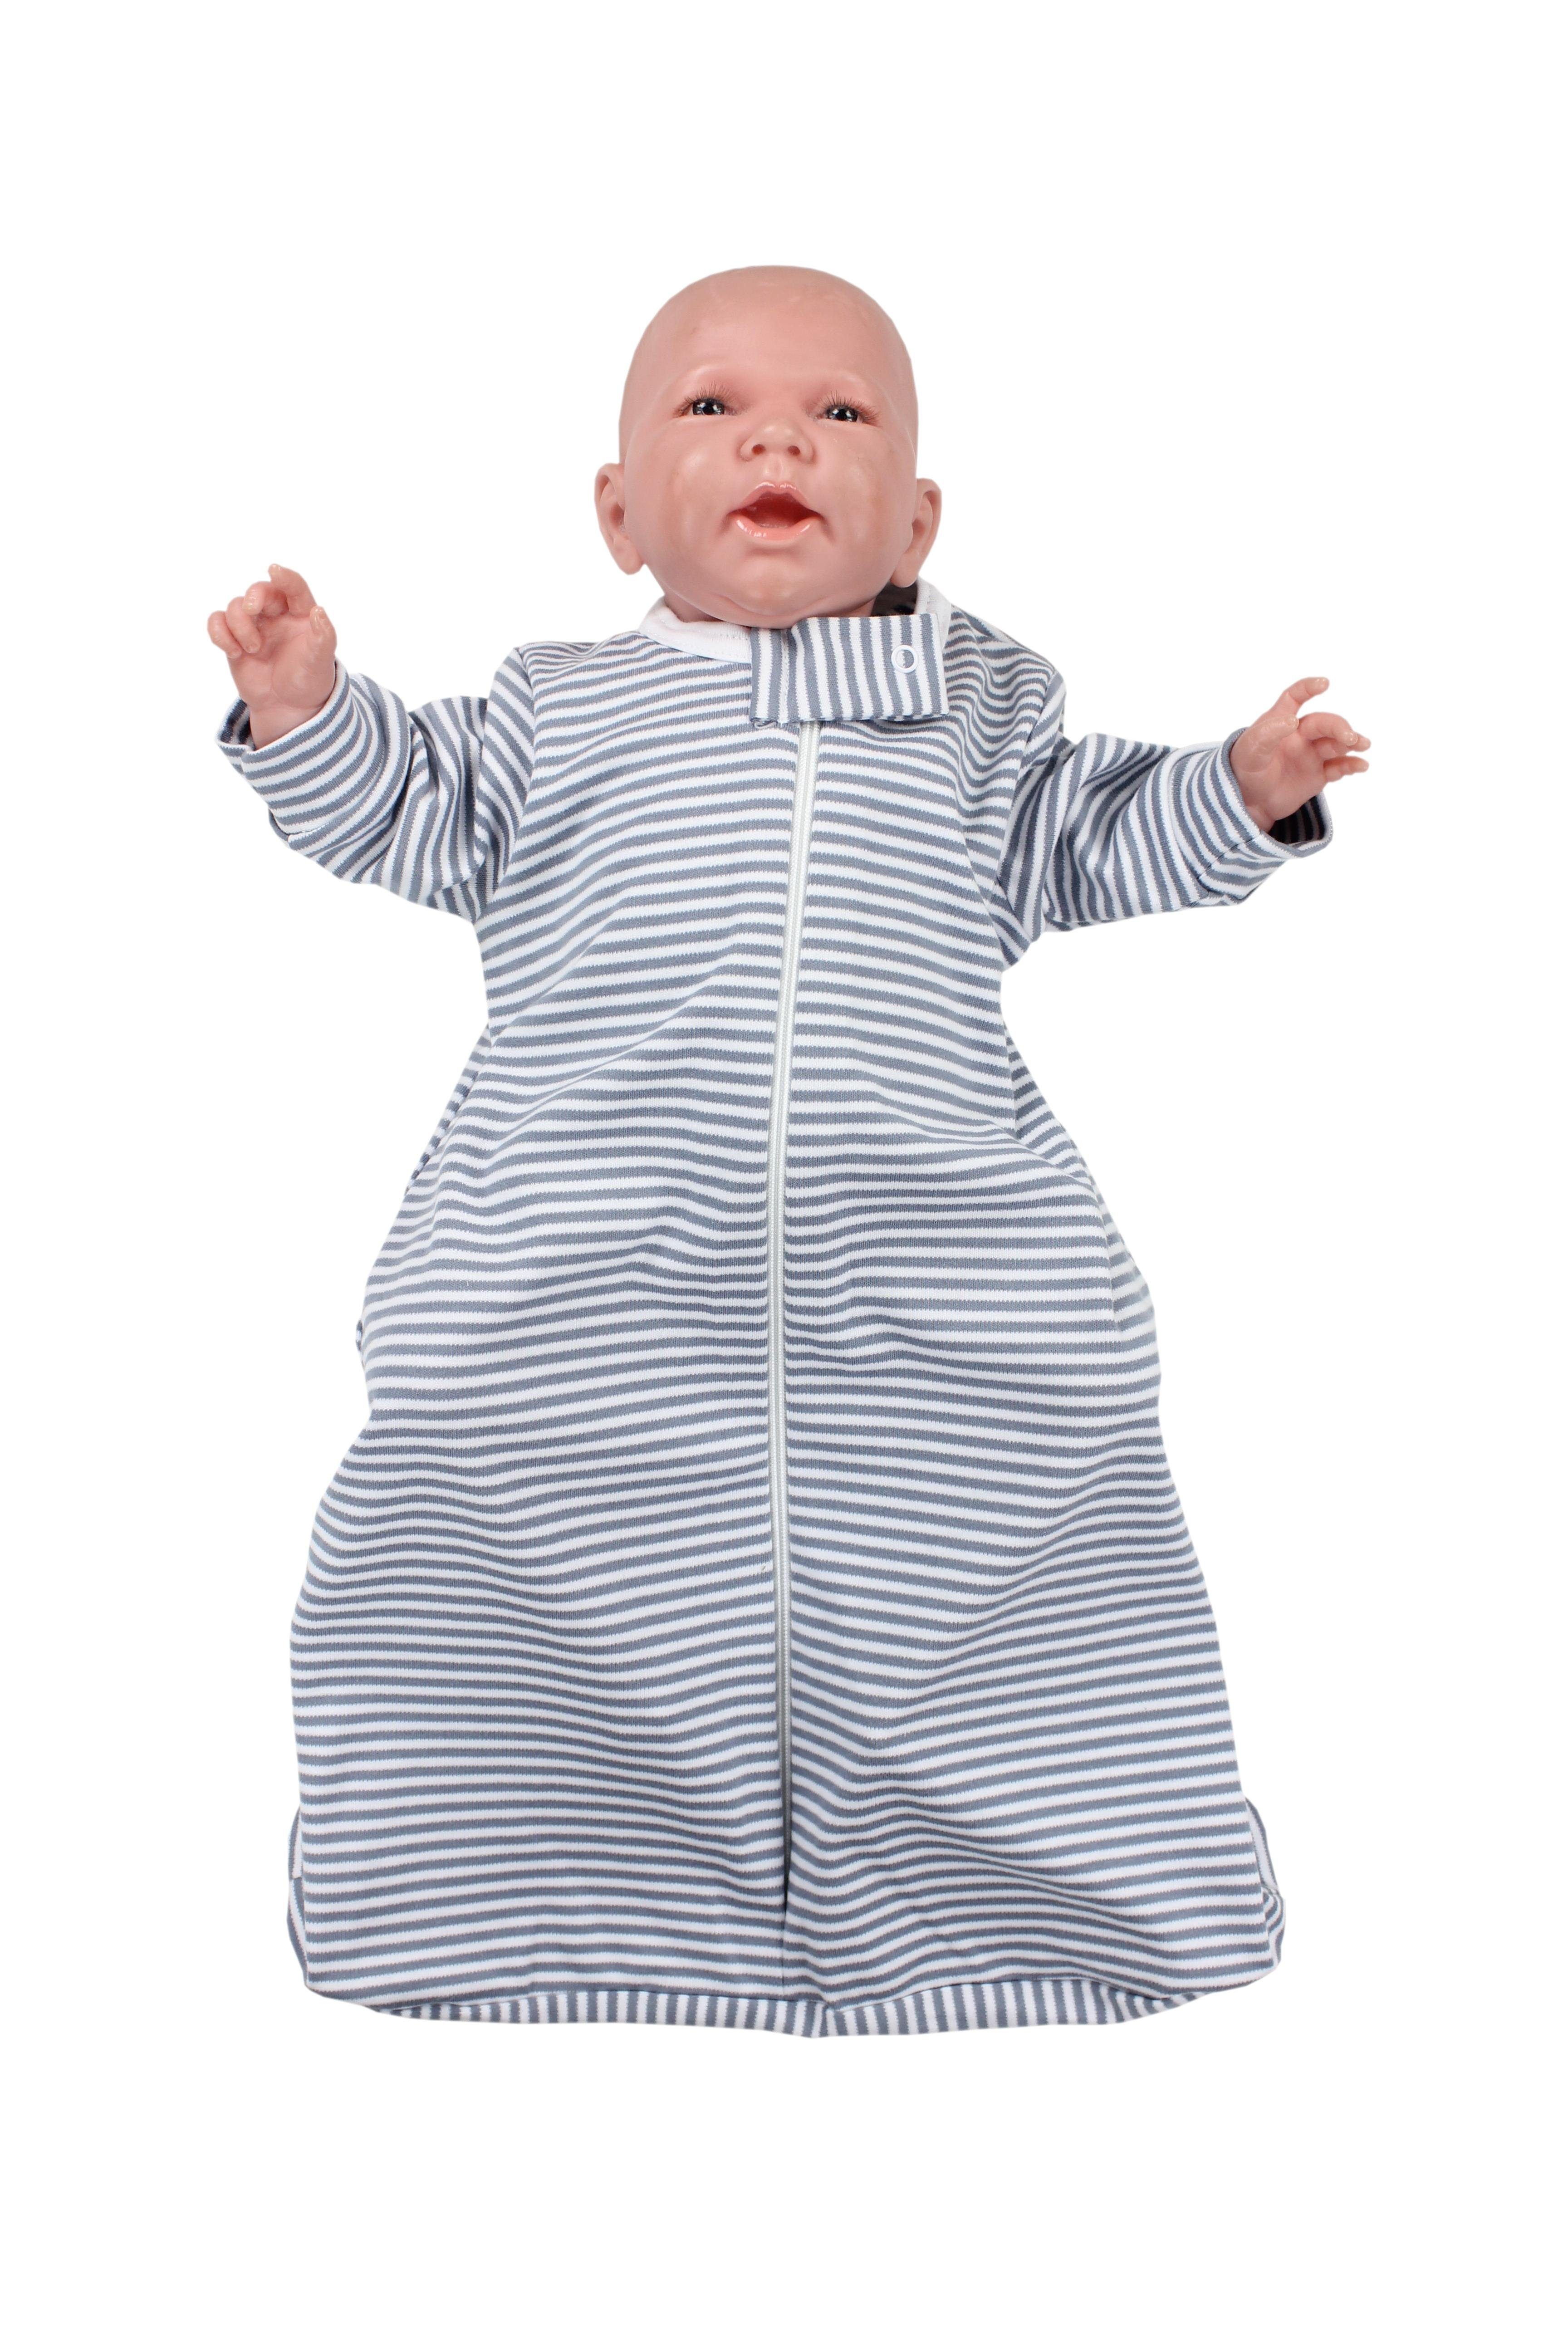 OEKO-TEX Grau Baby zertifiziert Babyschlafsack 0.2 Armen TOG Unisex Streifenmuster TupTam mit Schlafsack